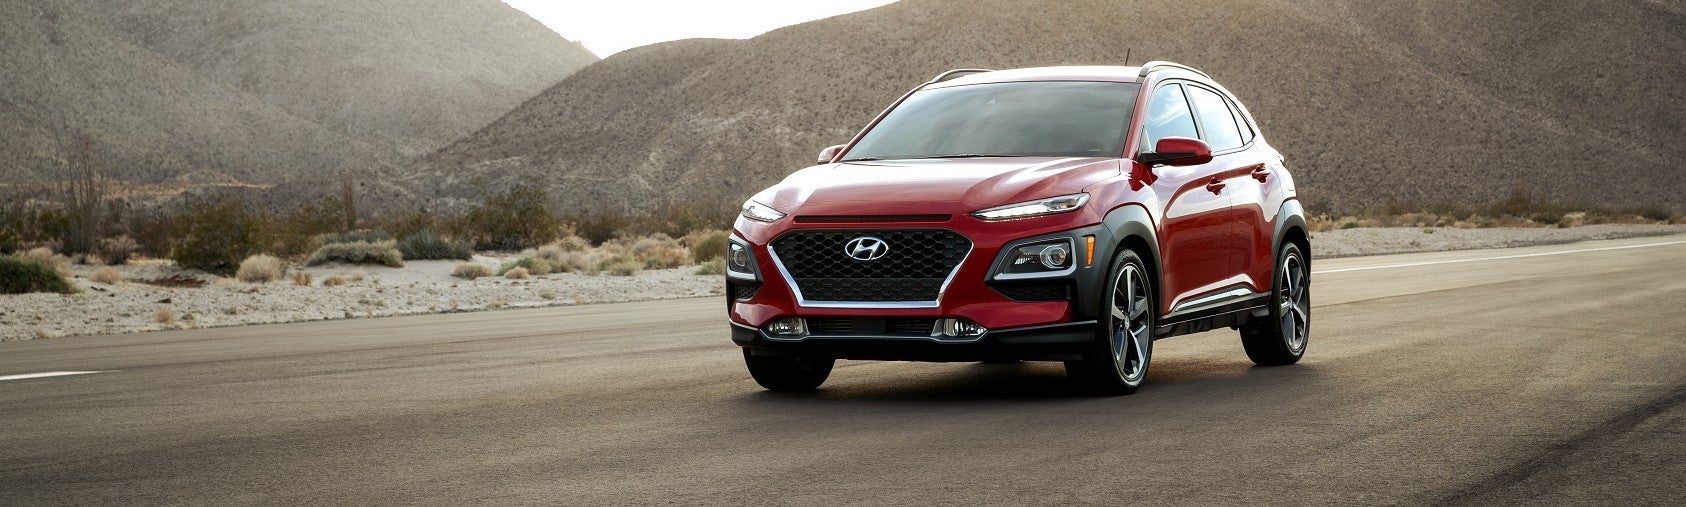 Hyundai Kona Lease Deals near Ann Arbor MI